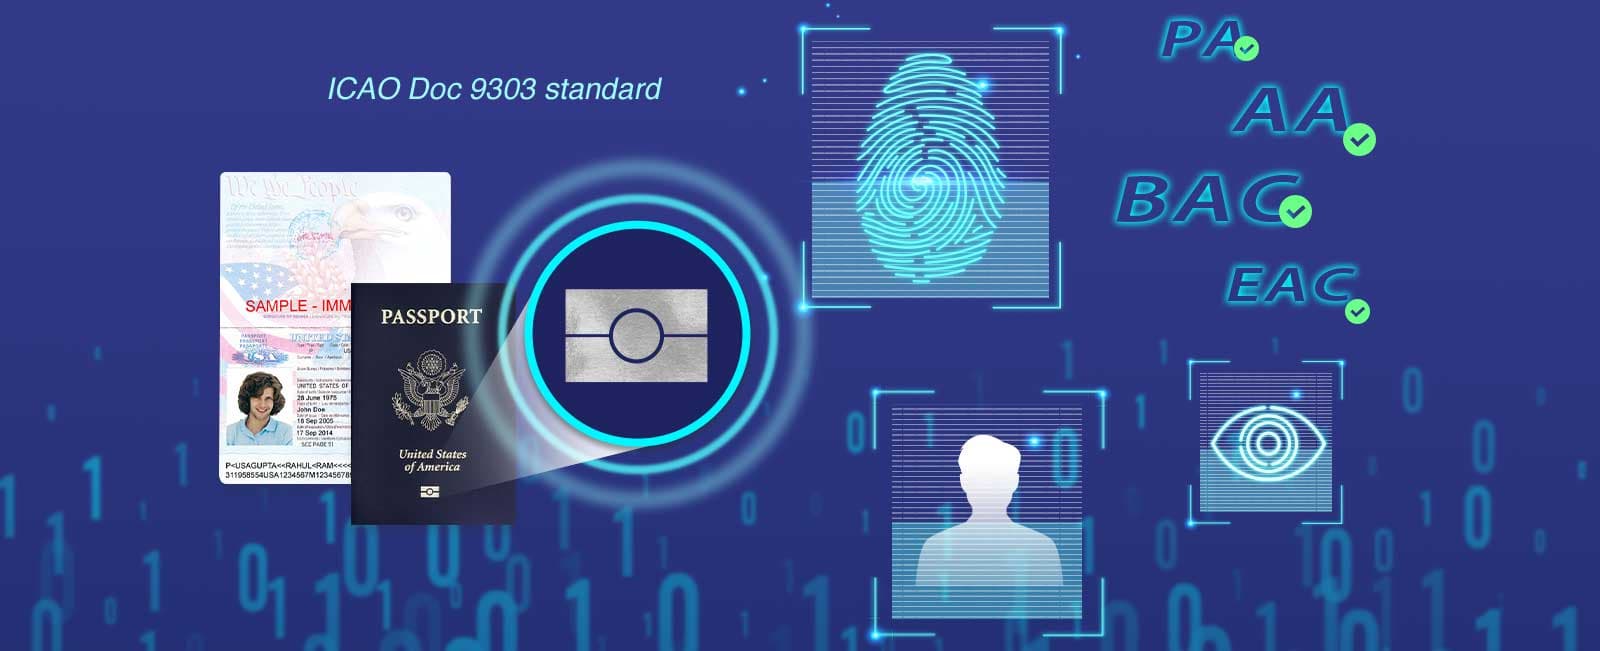 SecureScan X200 được tích hợp ăng ten RFID giúp phát hiện và đọc thông tin được mã hóa trên các mạch tích hợp không tiếp xúc trong thẻ e-ID và ePassport.